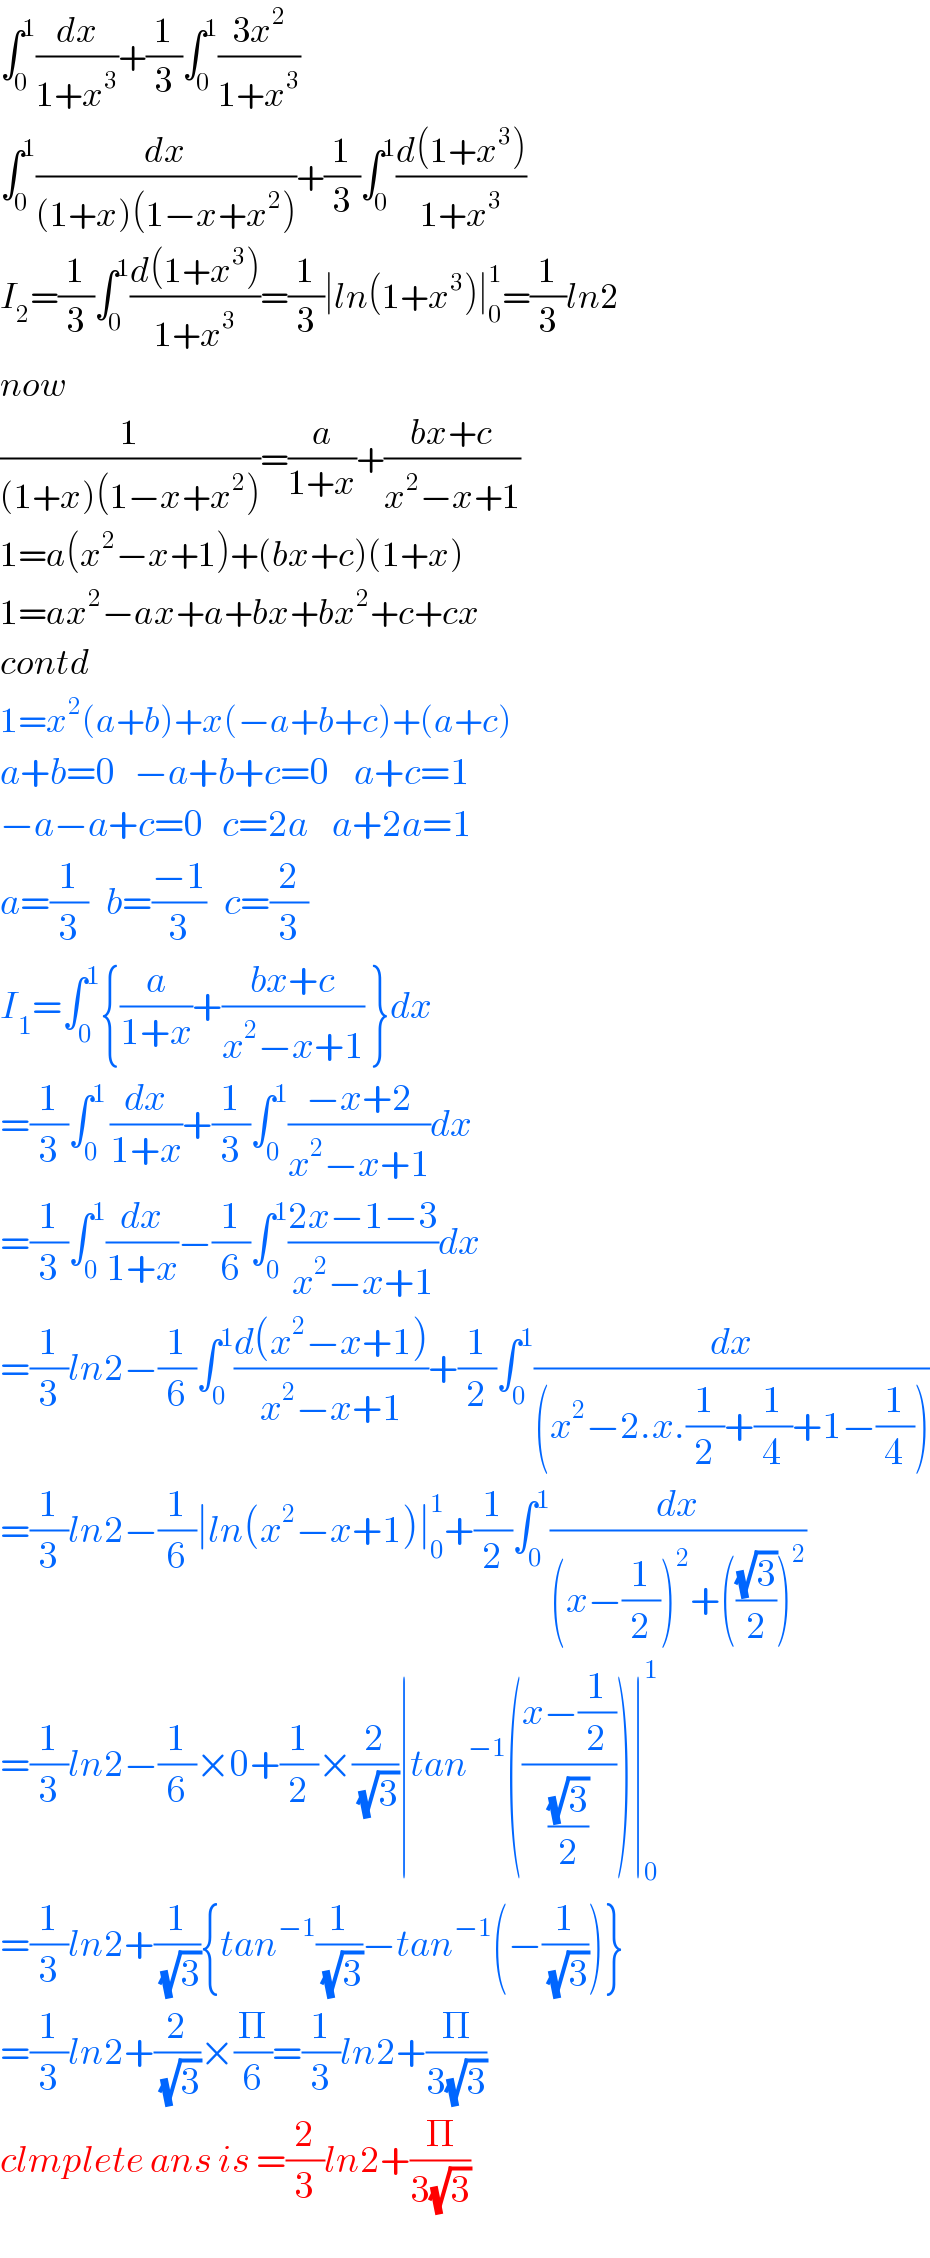 ∫_0 ^1 (dx/(1+x^3 ))+(1/3)∫_0 ^1 ((3x^2 )/(1+x^3 ))  ∫_0 ^1 (dx/((1+x)(1−x+x^2 )))+(1/3)∫_0 ^1 ((d(1+x^3 ))/(1+x^3 ))  I_2 =(1/3)∫_0 ^1 ((d(1+x^3 ))/(1+x^3 ))=(1/3)∣ln(1+x^3 )∣_0 ^1 =(1/3)ln2  now  (1/((1+x)(1−x+x^2 )))=(a/(1+x))+((bx+c)/(x^2 −x+1))  1=a(x^2 −x+1)+(bx+c)(1+x)  1=ax^2 −ax+a+bx+bx^2 +c+cx  contd  1=x^2 (a+b)+x(−a+b+c)+(a+c)  a+b=0   −a+b+c=0    a+c=1  −a−a+c=0   c=2a    a+2a=1  a=(1/3)   b=((−1)/3)   c=(2/3)  I_1 =∫_0 ^1 {(a/(1+x))+((bx+c)/(x^2 −x+1)) }dx  =(1/3)∫_(0 ) ^1 (dx/(1+x))+(1/3)∫_0 ^1 ((−x+2)/(x^2 −x+1))dx  =(1/3)∫_0 ^1 (dx/(1+x))−(1/6)∫_0 ^1 ((2x−1−3)/(x^2 −x+1))dx  =(1/3)ln2−(1/6)∫_0 ^1 ((d(x^2 −x+1))/(x^2 −x+1))+(1/2)∫_0 ^1 (dx/((x^2 −2.x.(1/2)+(1/4)+1−(1/4))))  =(1/3)ln2−(1/6)∣ln(x^2 −x+1)∣_0 ^1 +(1/2)∫_0 ^1 (dx/((x−(1/2))^2 +(((√3)/2))^2 ))  =(1/3)ln2−(1/6)×0+(1/2)×(2/(√3))∣tan^(−1) (((x−(1/2))/((√3)/2)))∣_0 ^1   =(1/3)ln2+(1/(√3)){tan^(−1) (1/(√3))−tan^(−1) (−(1/(√3)))}  =(1/3)ln2+(2/(√3))×(Π/6)=(1/3)ln2+(Π/(3(√3)))  clmplete ans is =(2/3)ln2+(Π/(3(√3)))  